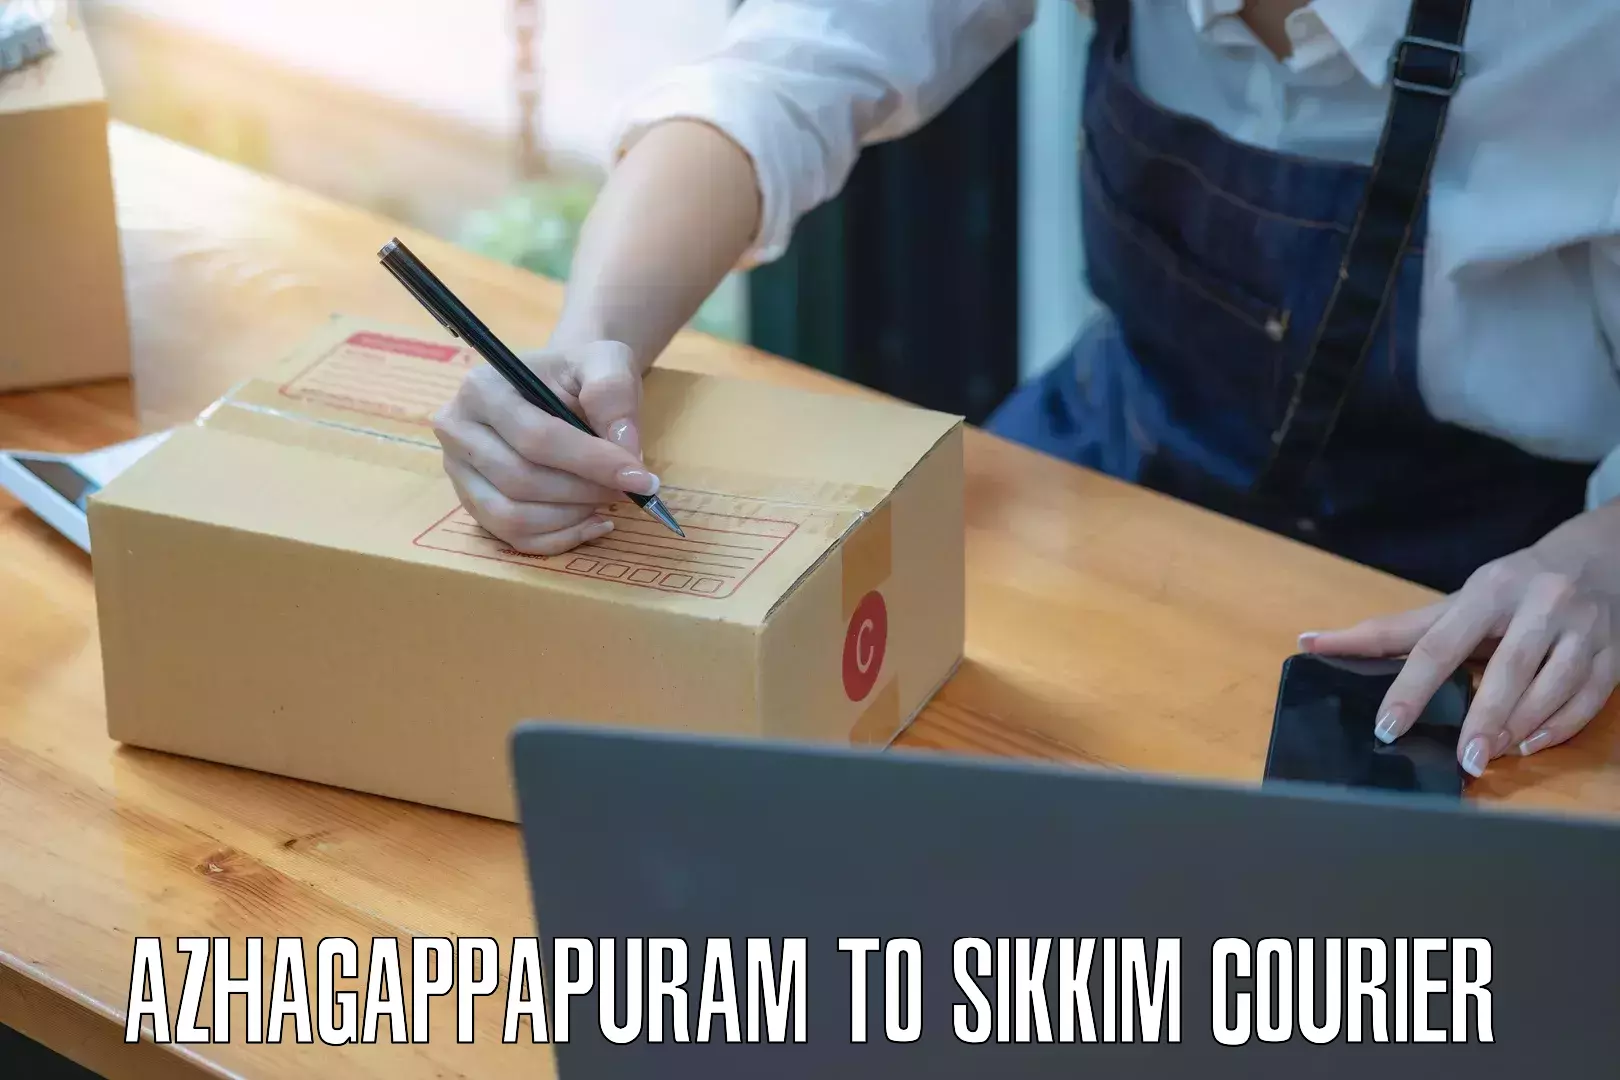 Courier app Azhagappapuram to Gangtok